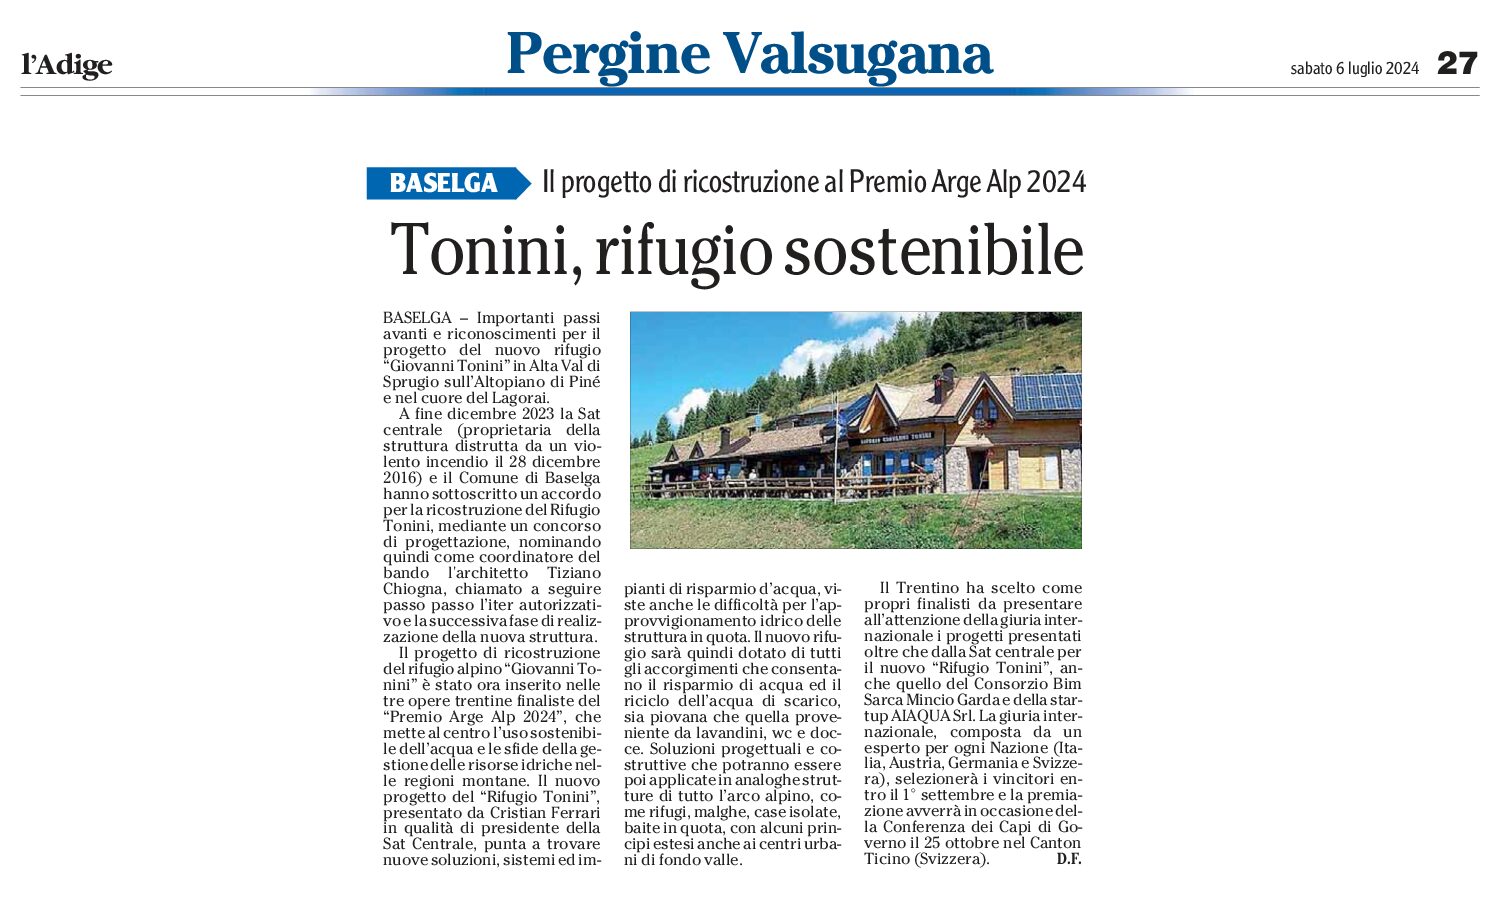 Baselga: Tonini, rifugio sostenibile